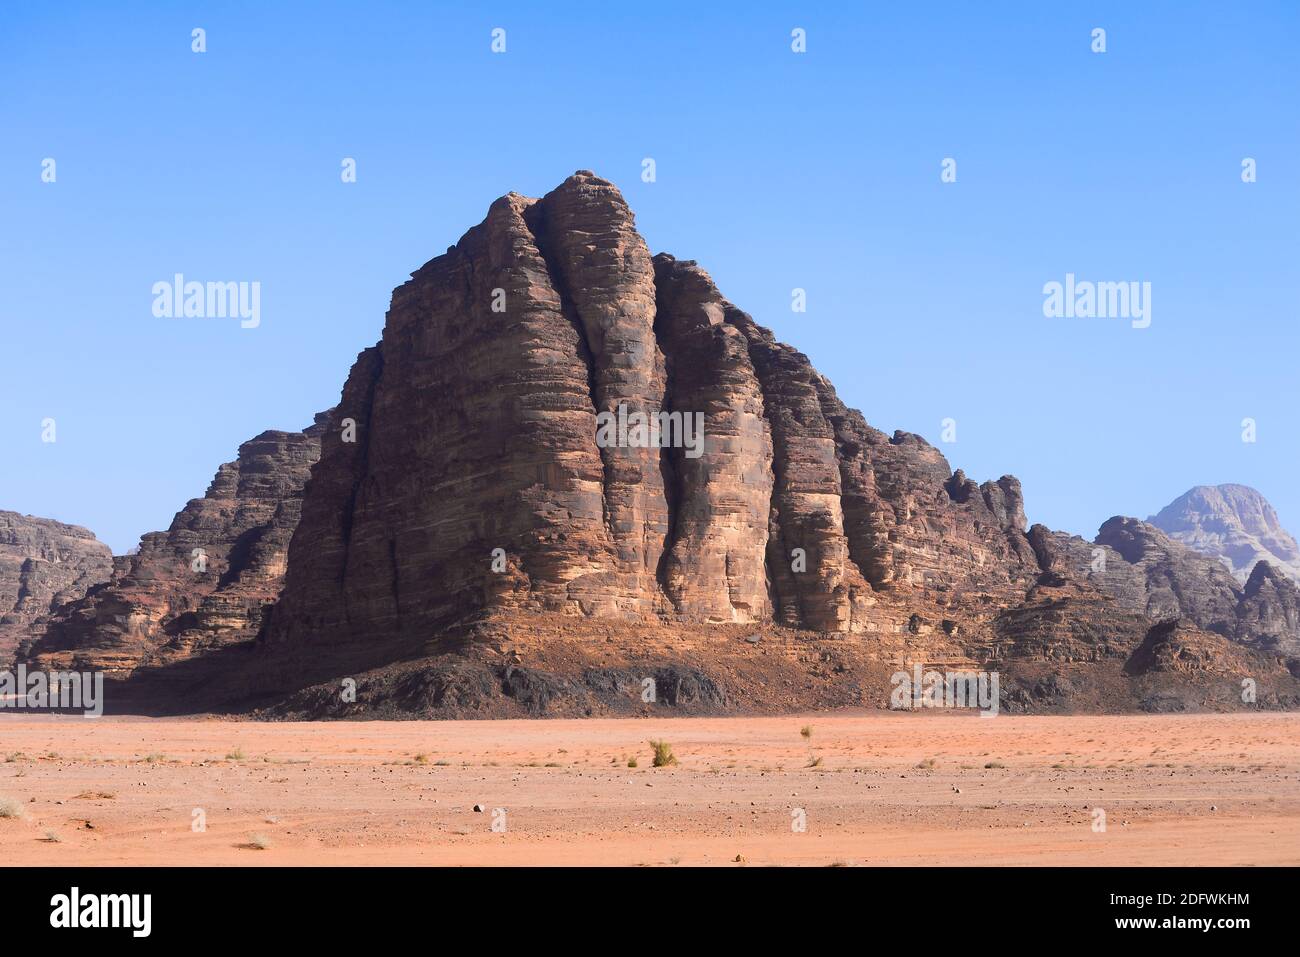 I sette pilastri della Sapienza a Wadi Rum, Giordania. La formazione rocciosa Valley of the Moon prende il nome dal famoso film epico Lawrence of Arabia. Wadi al-Qamar. Foto Stock